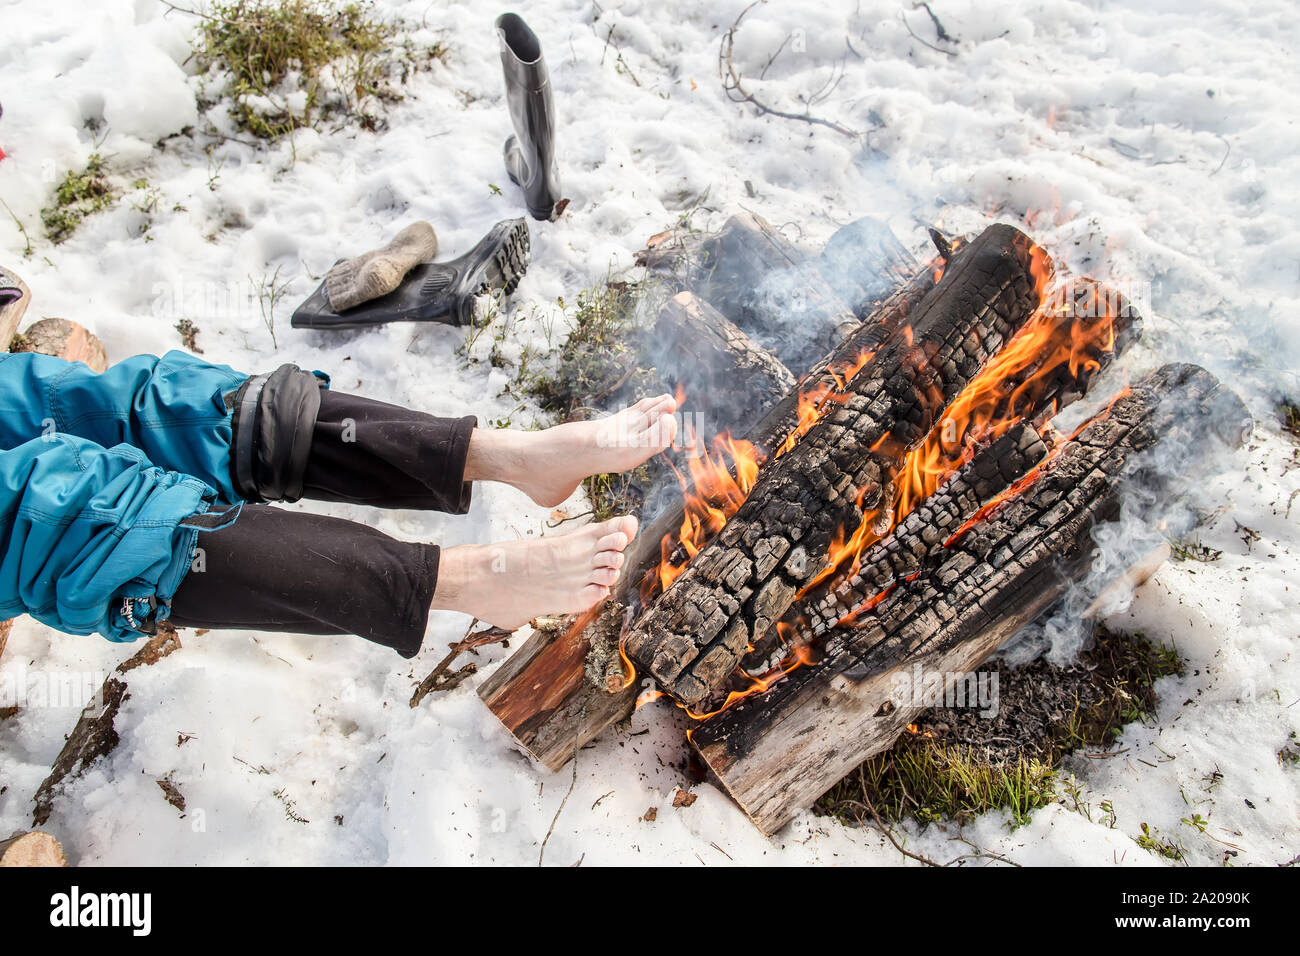 Un homme se réchauffe ses pieds nus près de l'incendie dans la forêt de pins couverts de neige en hiver Banque D'Images